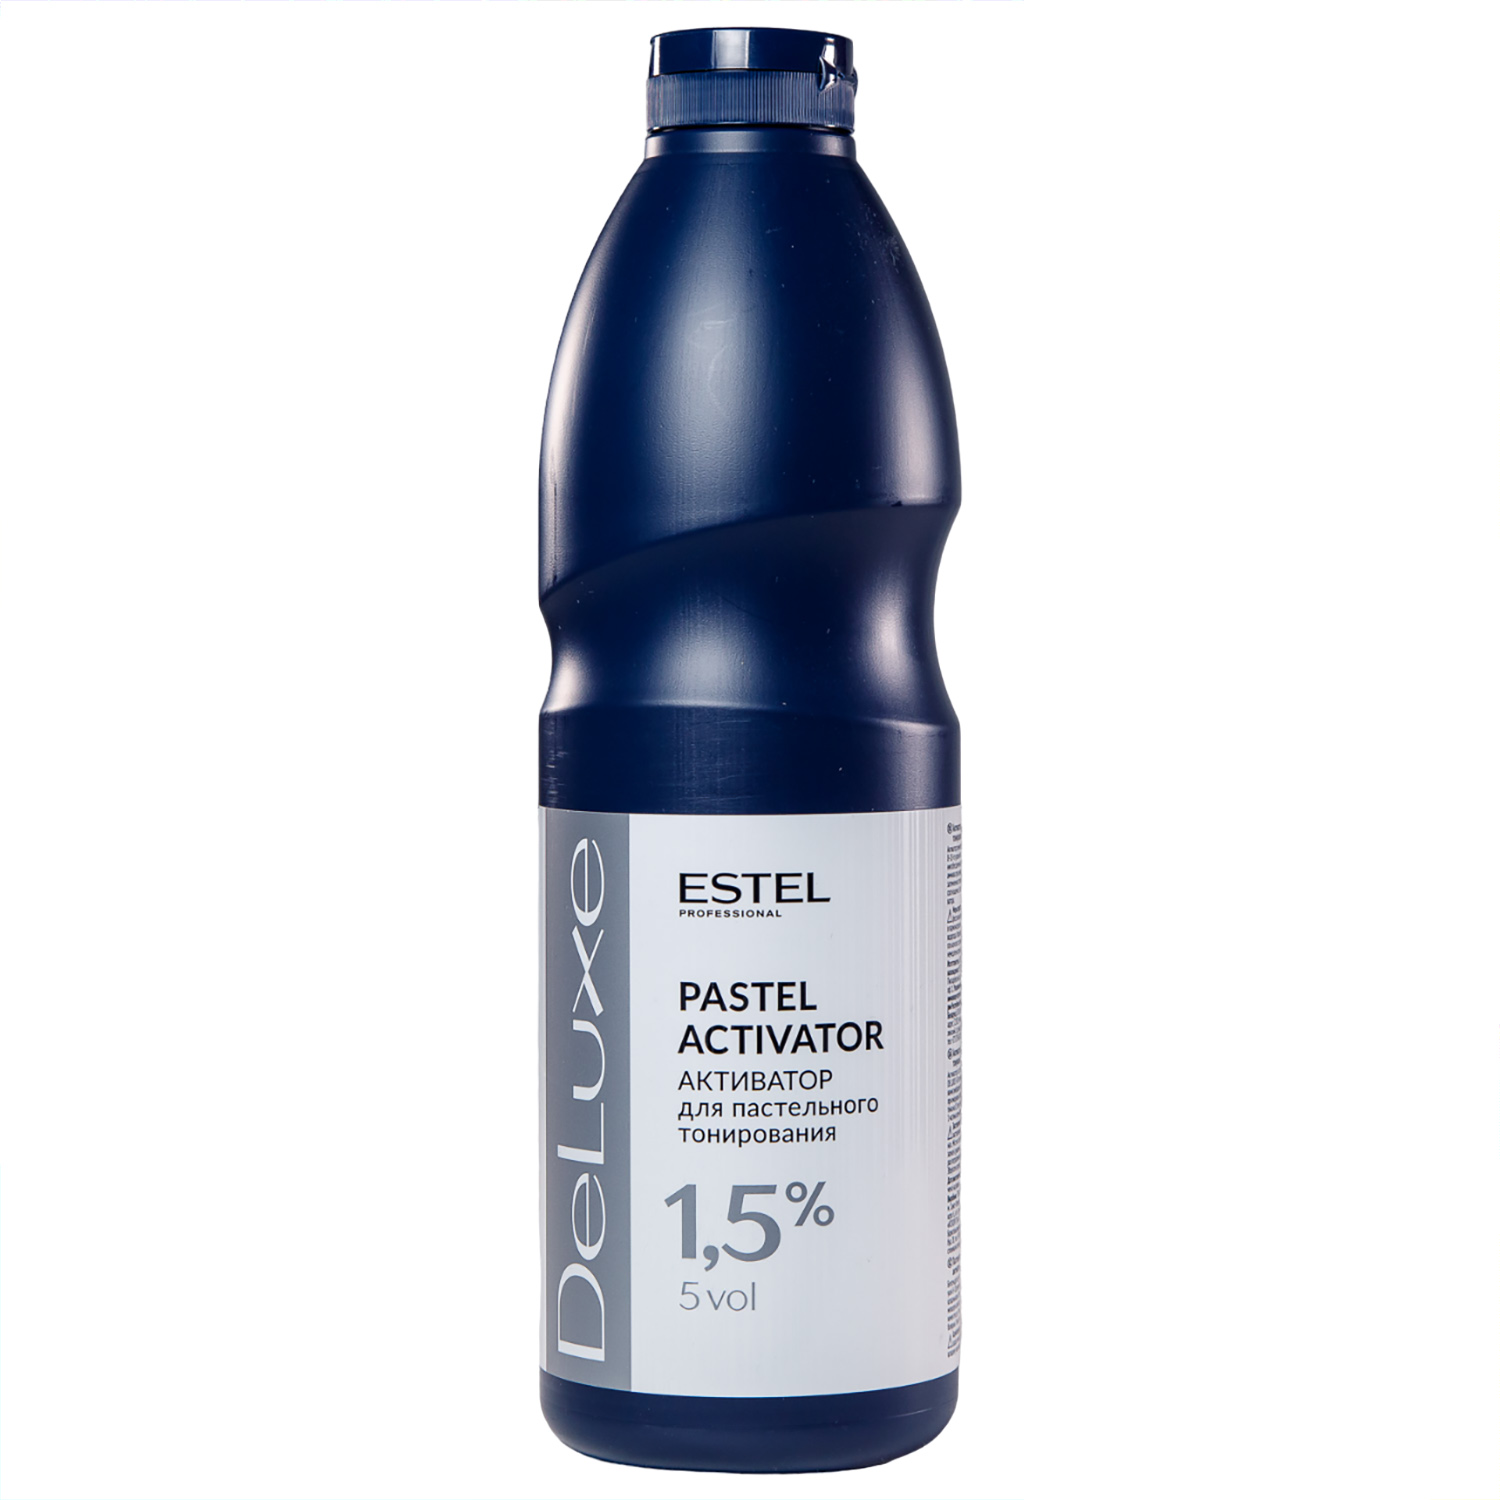 Estel Активатор 1,5% для пастельного тонирования, 1000 мл (Estel, De luxe) estel активатор de luxe 1 5% 1000 мл